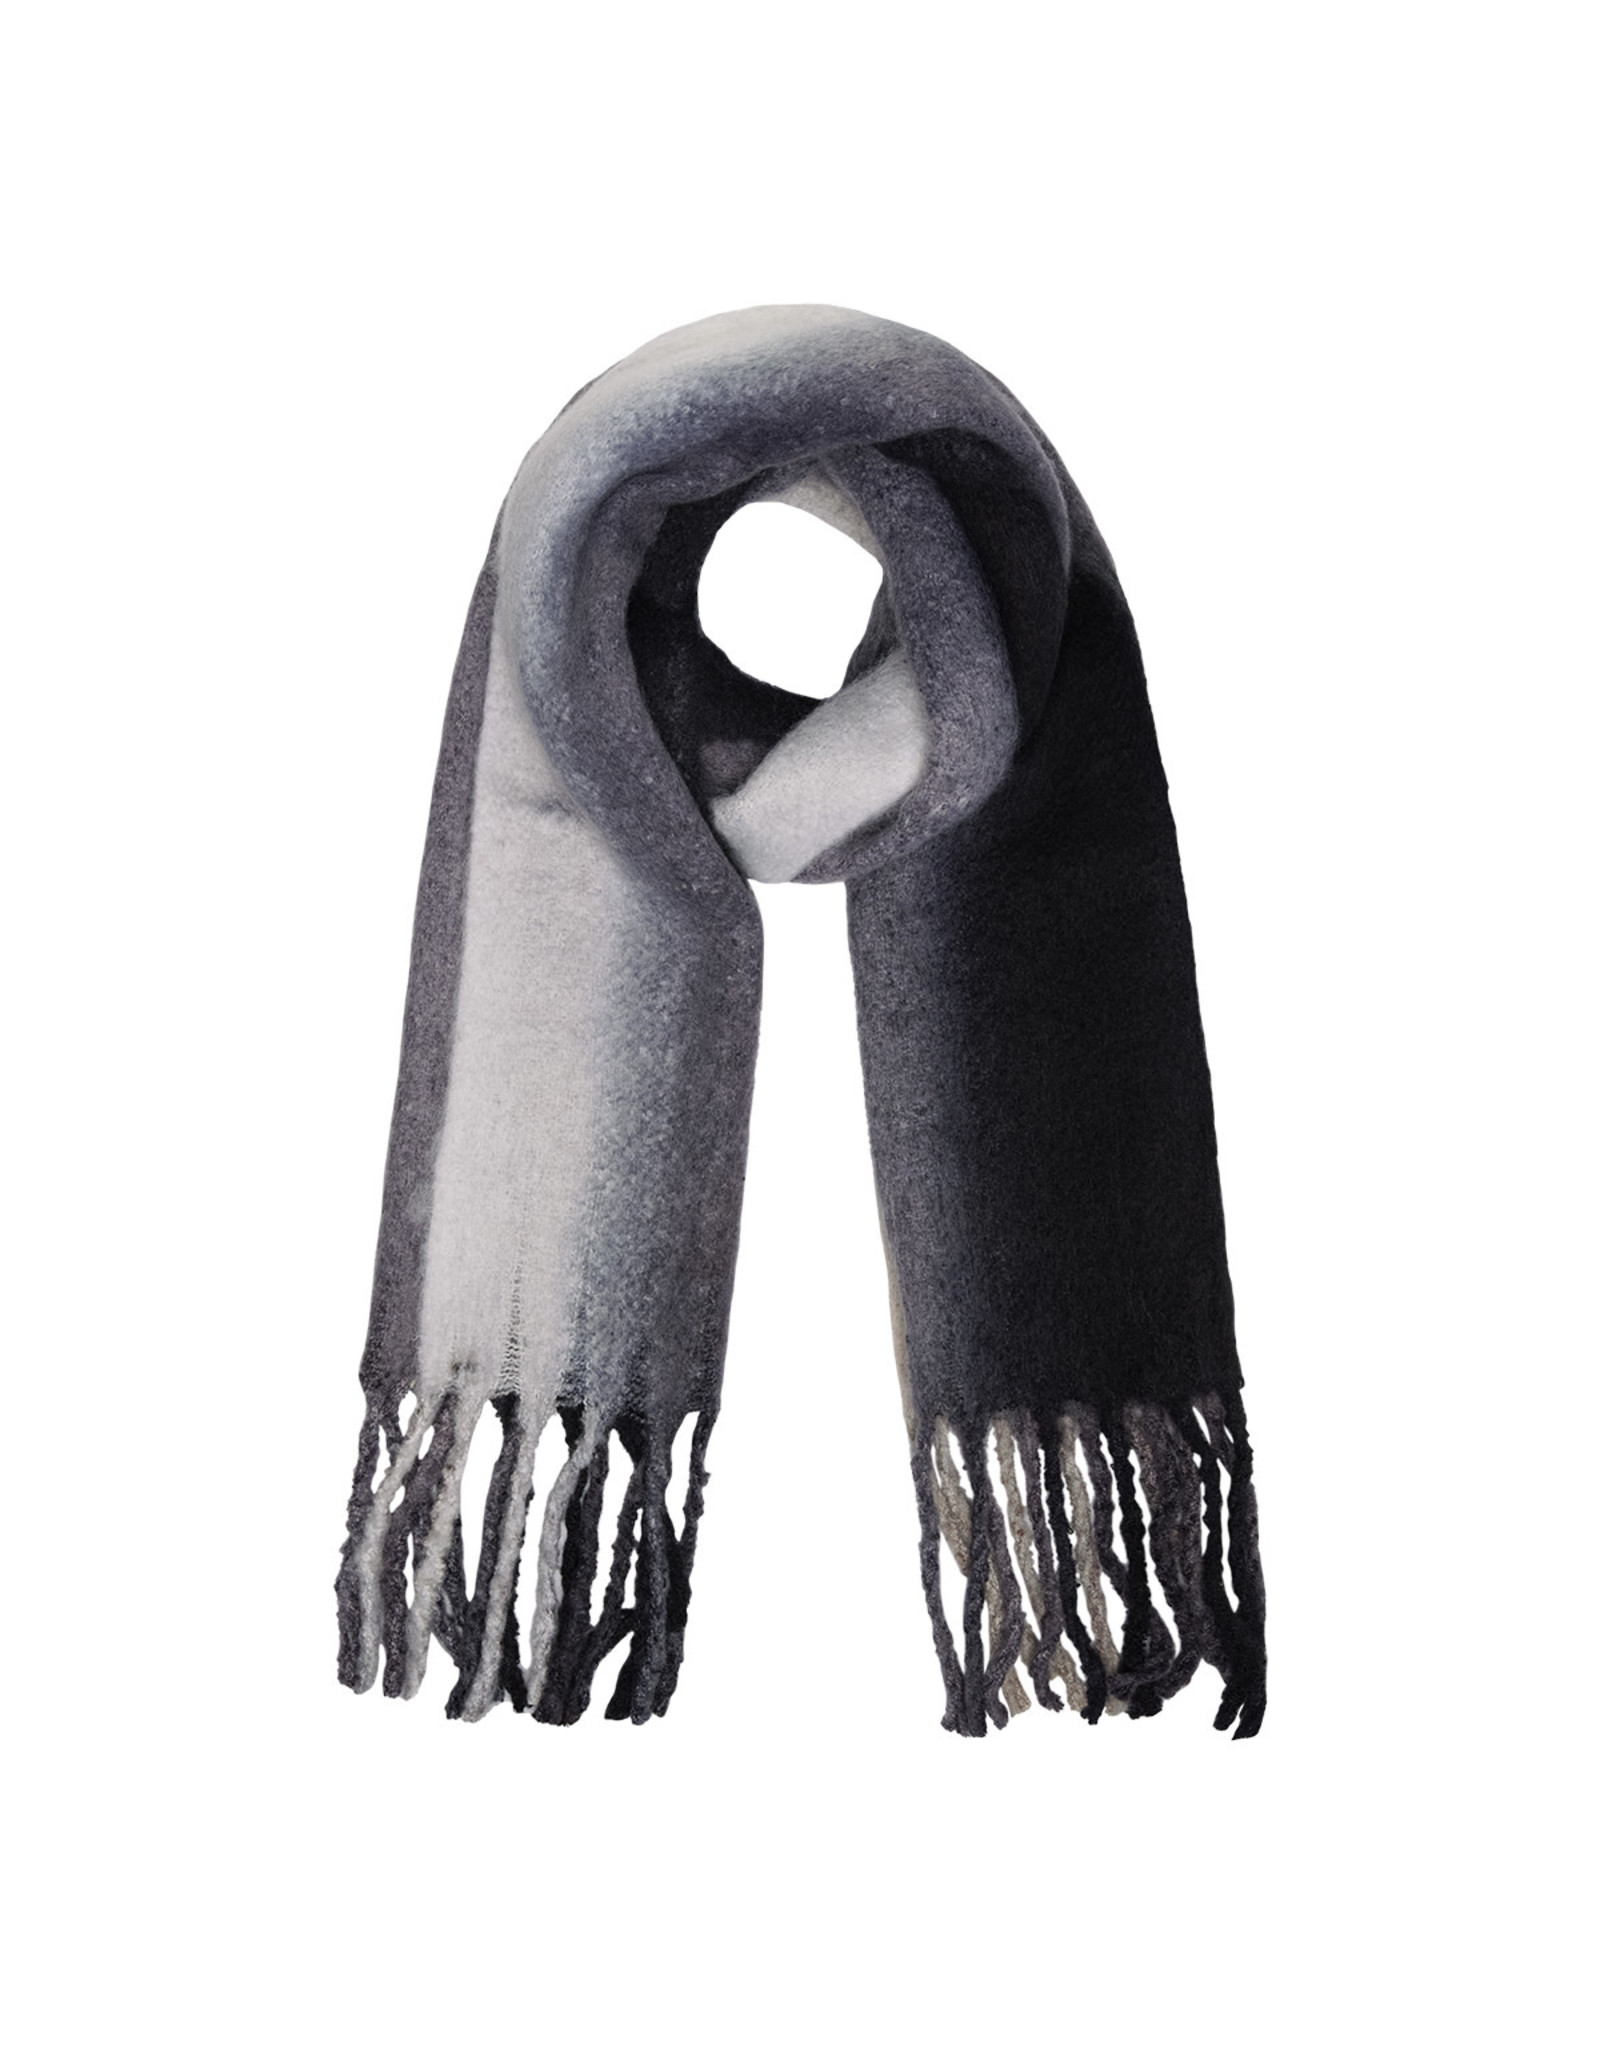 Sjaal verticale kleuren ecru/grijs/zwart